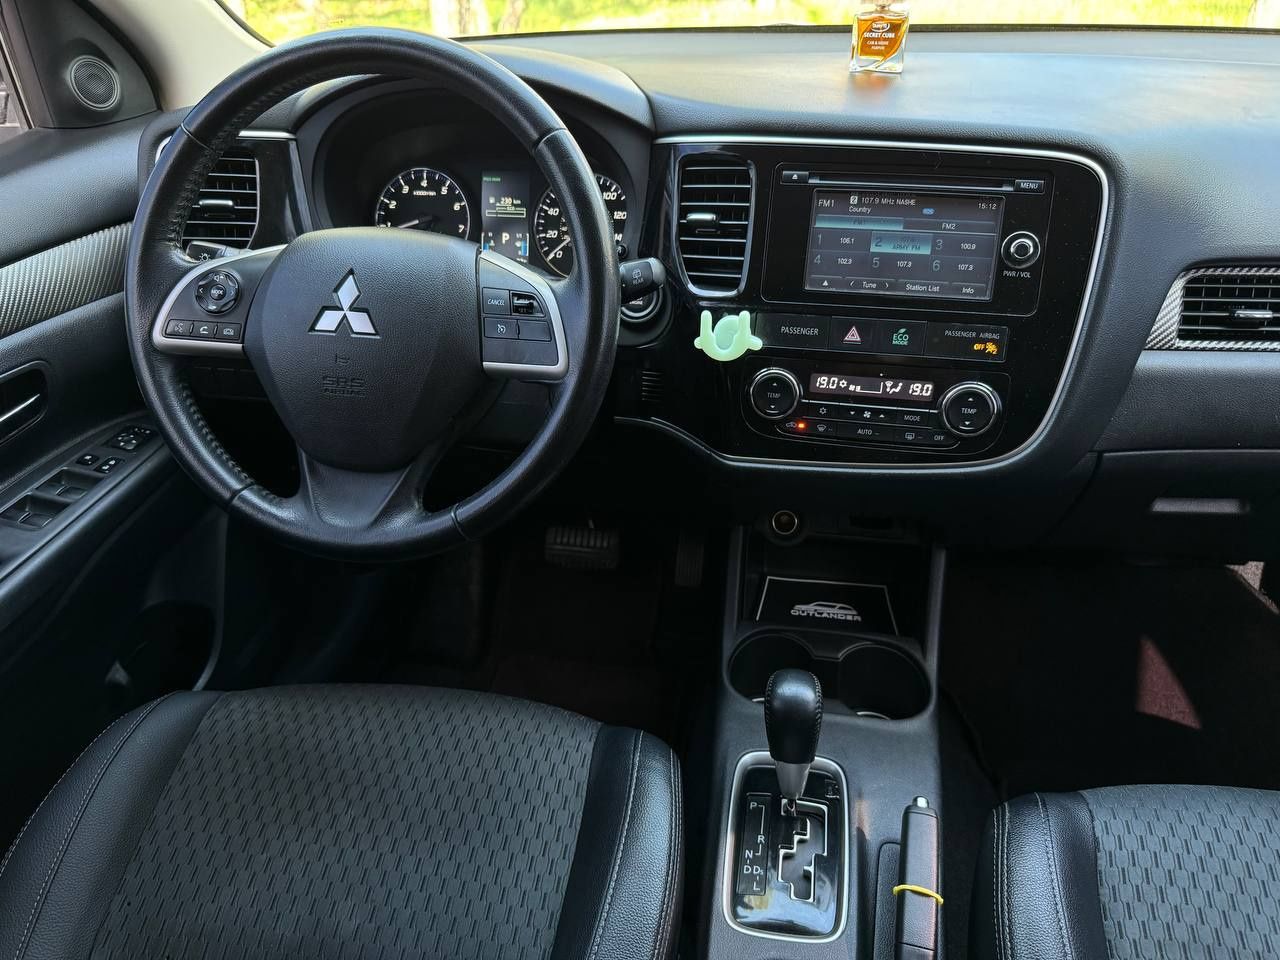 Mitsubishi Outlander 2014 року, 2.4 бензин , автомат передній привід,